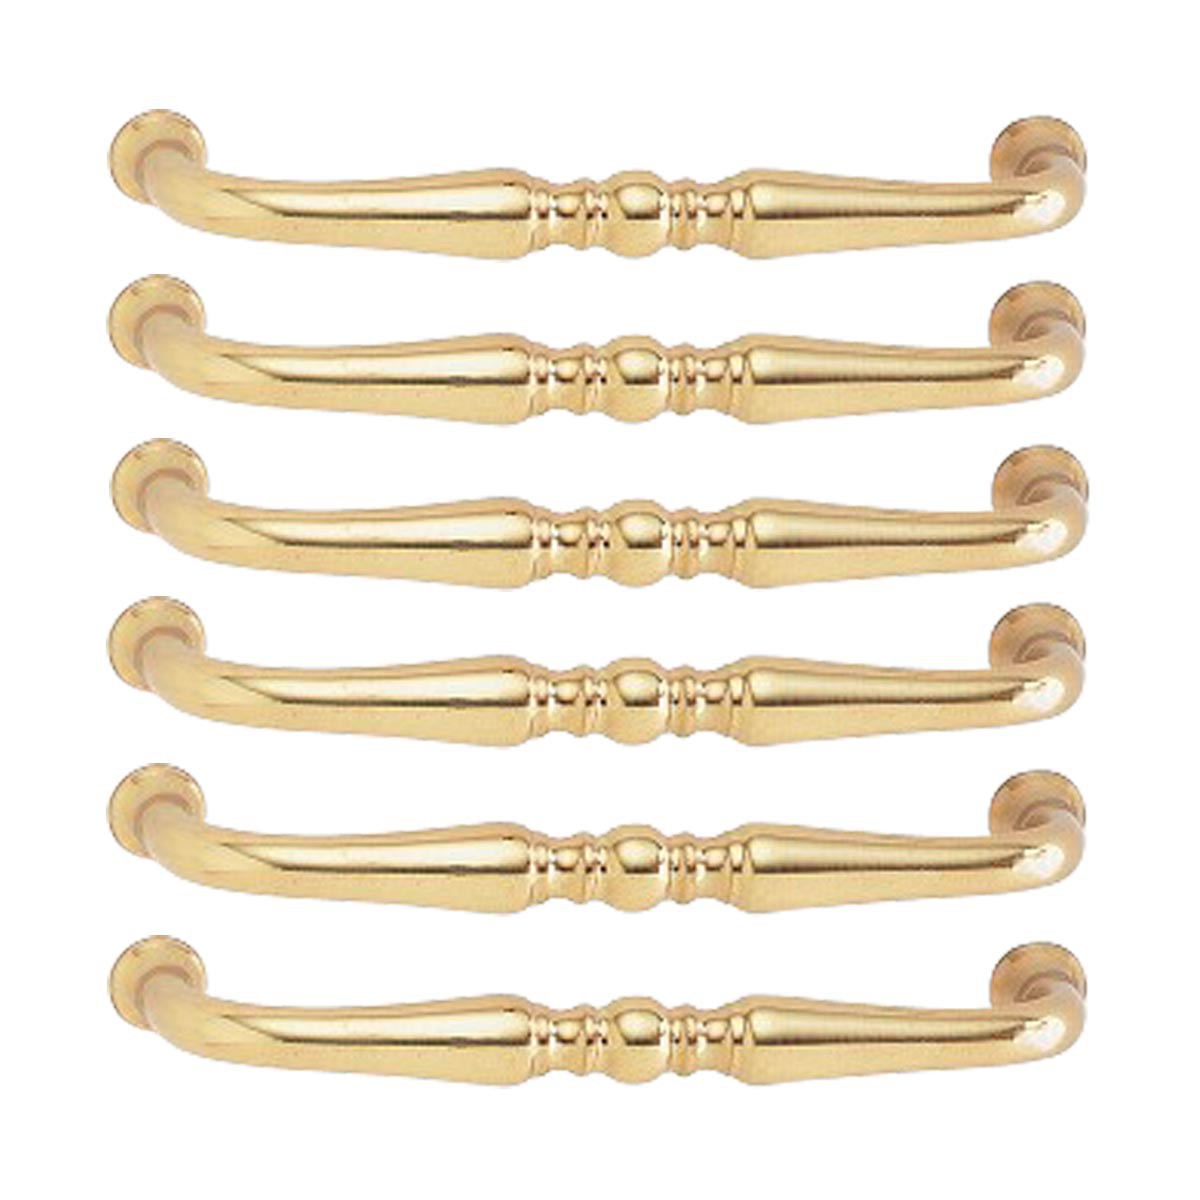 OYX Paquete de 6 tiradores de cajones dorados de 5 pulgadas, herrajes de  latón macizo para armarios y cajones, manijas de gabinete de cocina  doradas